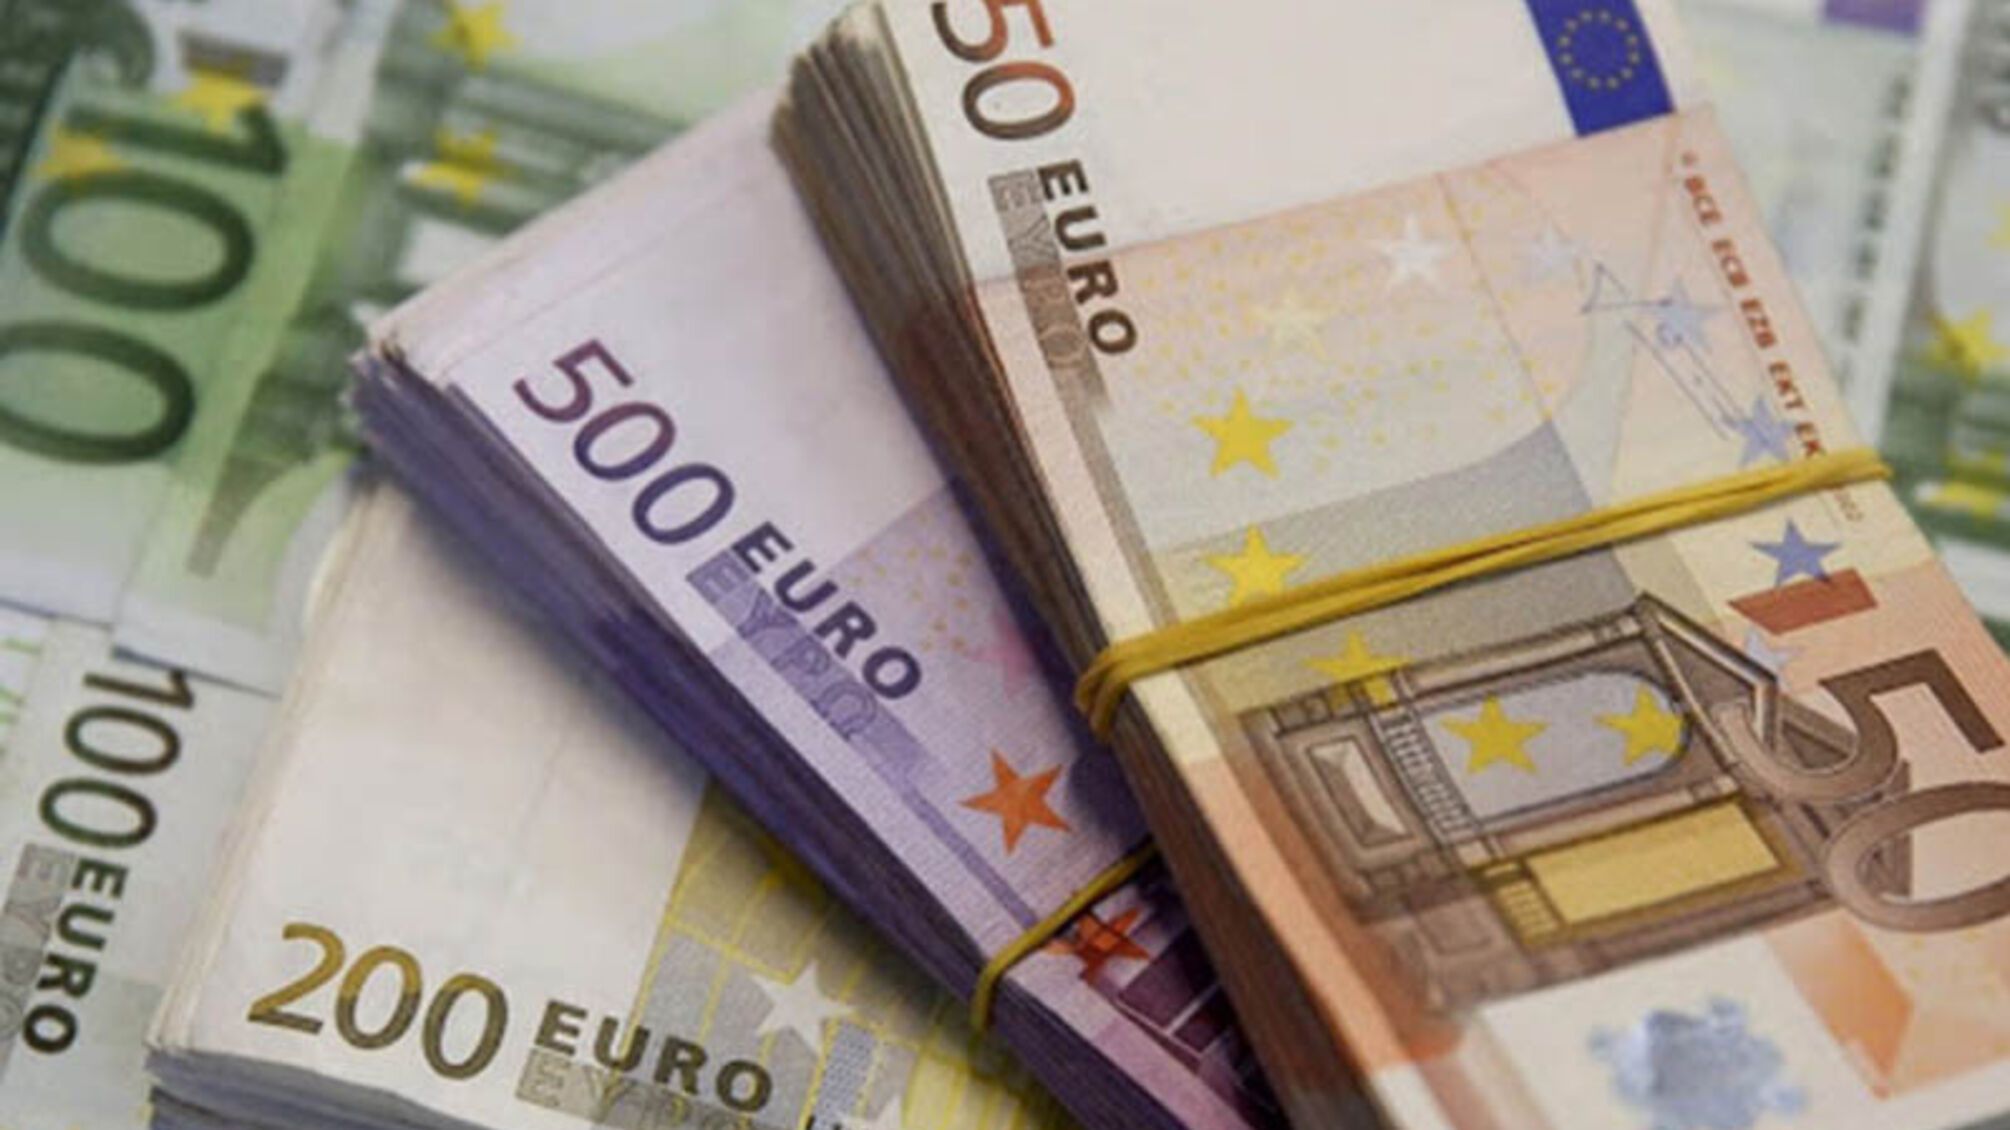 Немецкое правительство анонсировало финансовую поддержку Украине 1 млрд евро грантовой поддержки